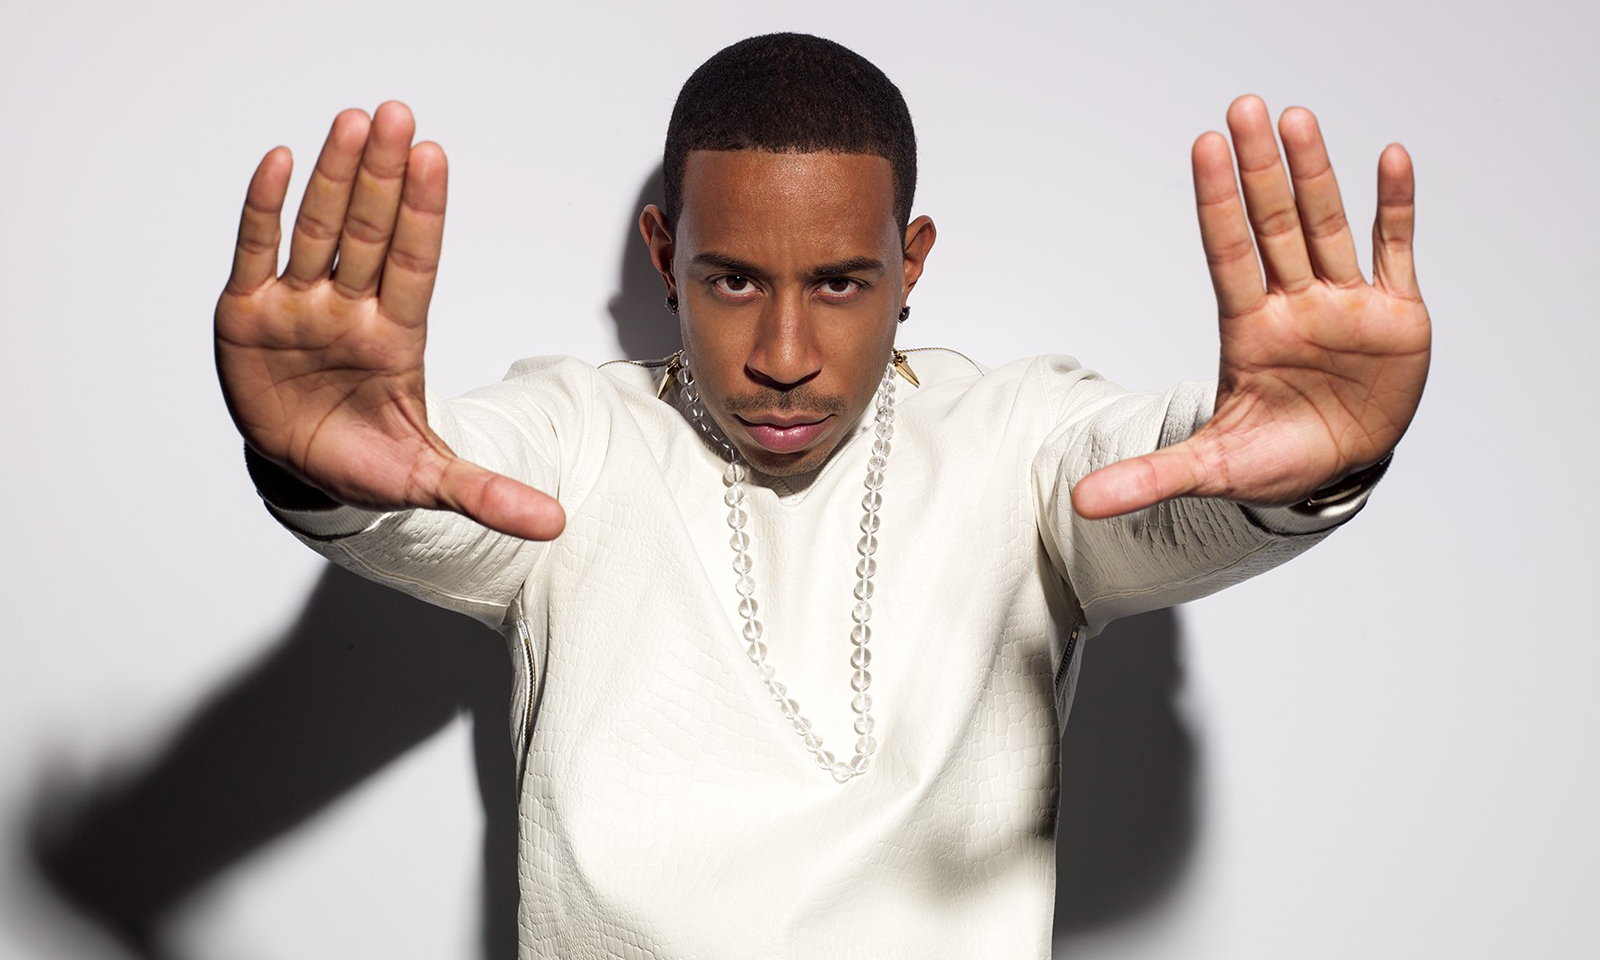 Atlanta Celebrates the TOUR Championship with Ludacris, a three-time Grammy award-winner